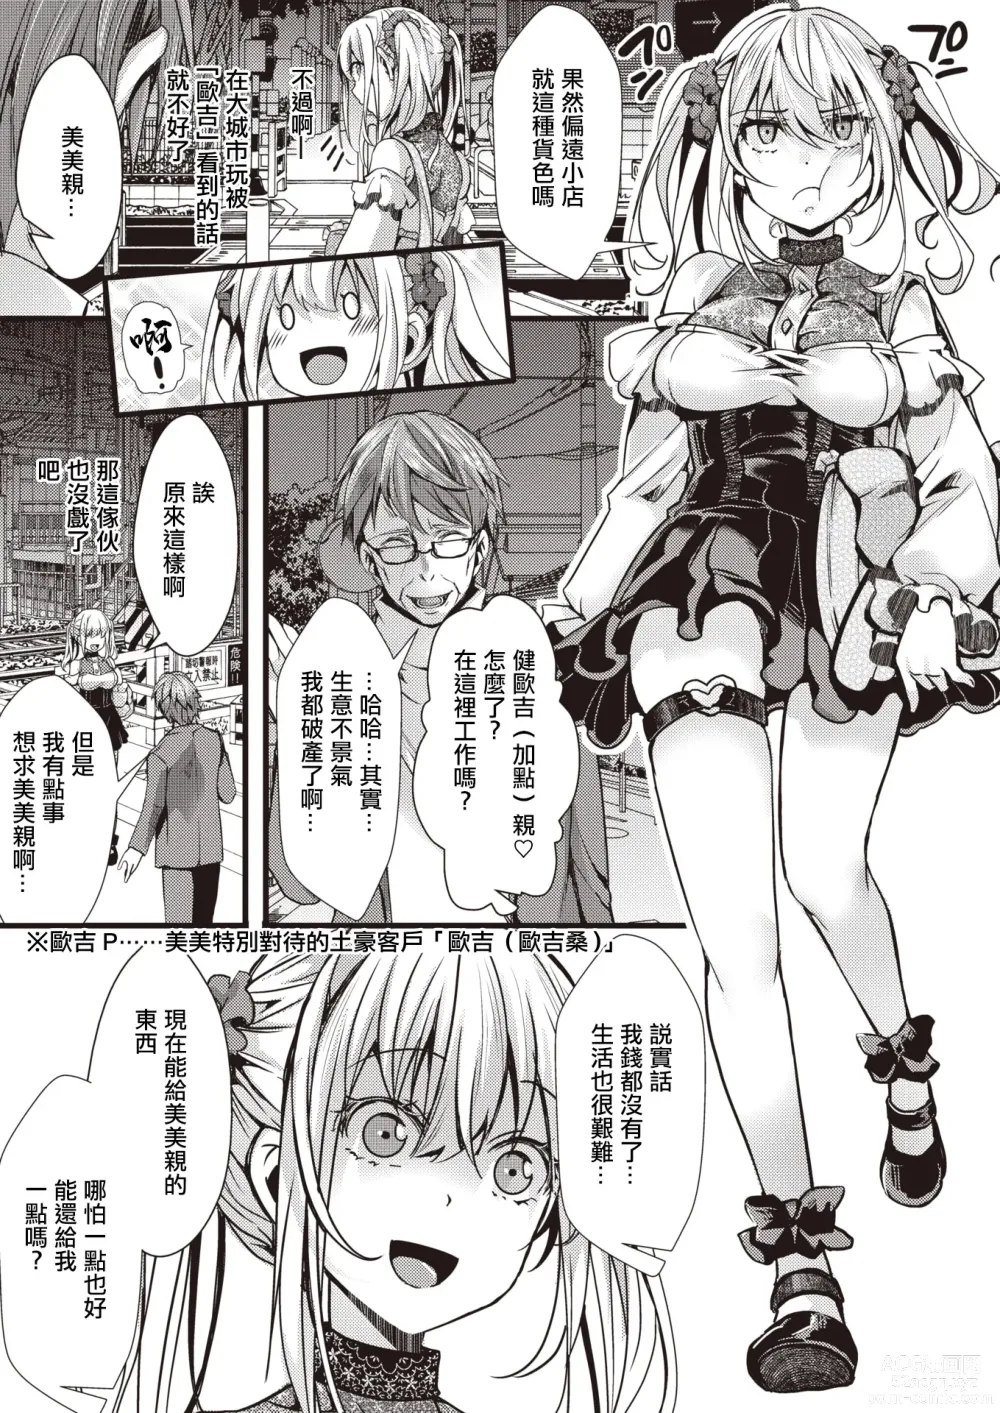 Page 3 of manga [惡貫滿盈] 貪婪女王美美親vs激怒大叔聯盟